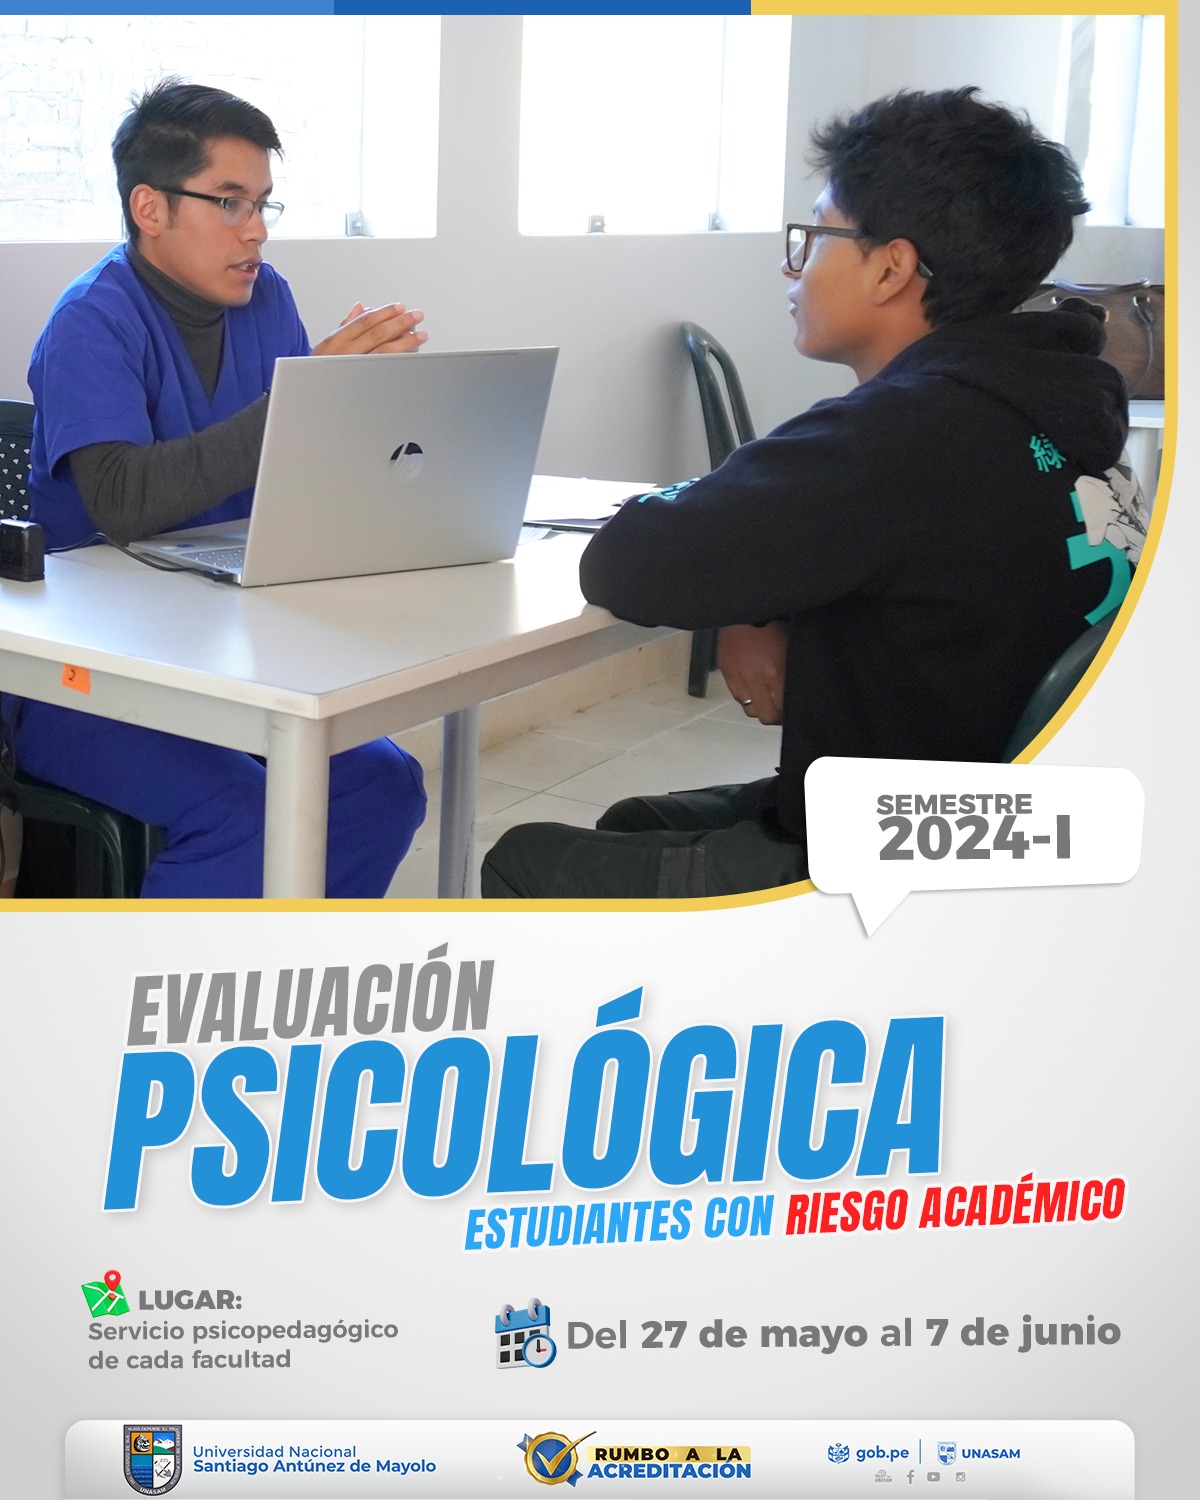  														EVALUACIÓN PSICOLÓGICA A ESTUDIANTES EN RIESGO ACADÉMICO 2024-I
														